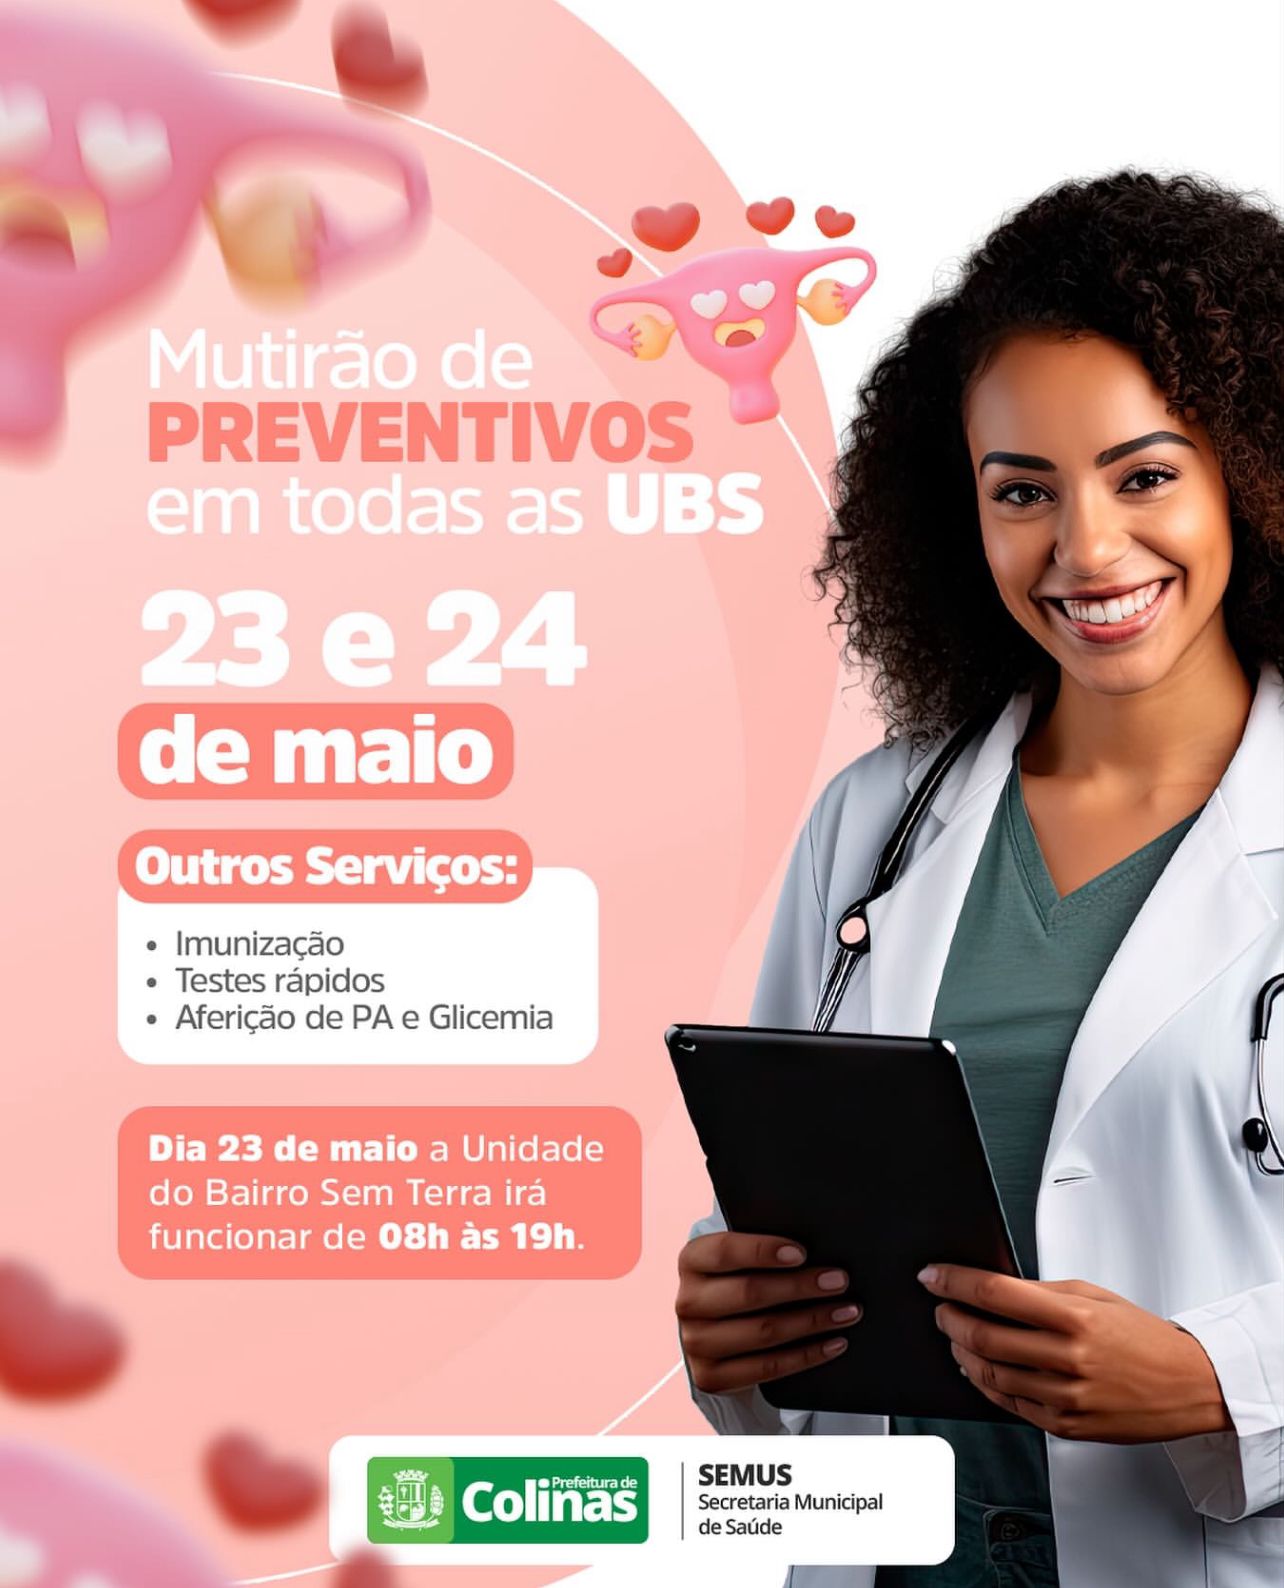 Saúde de Colinas realizará Mutirão de Preventivos nos dias 23 e 24 de maio